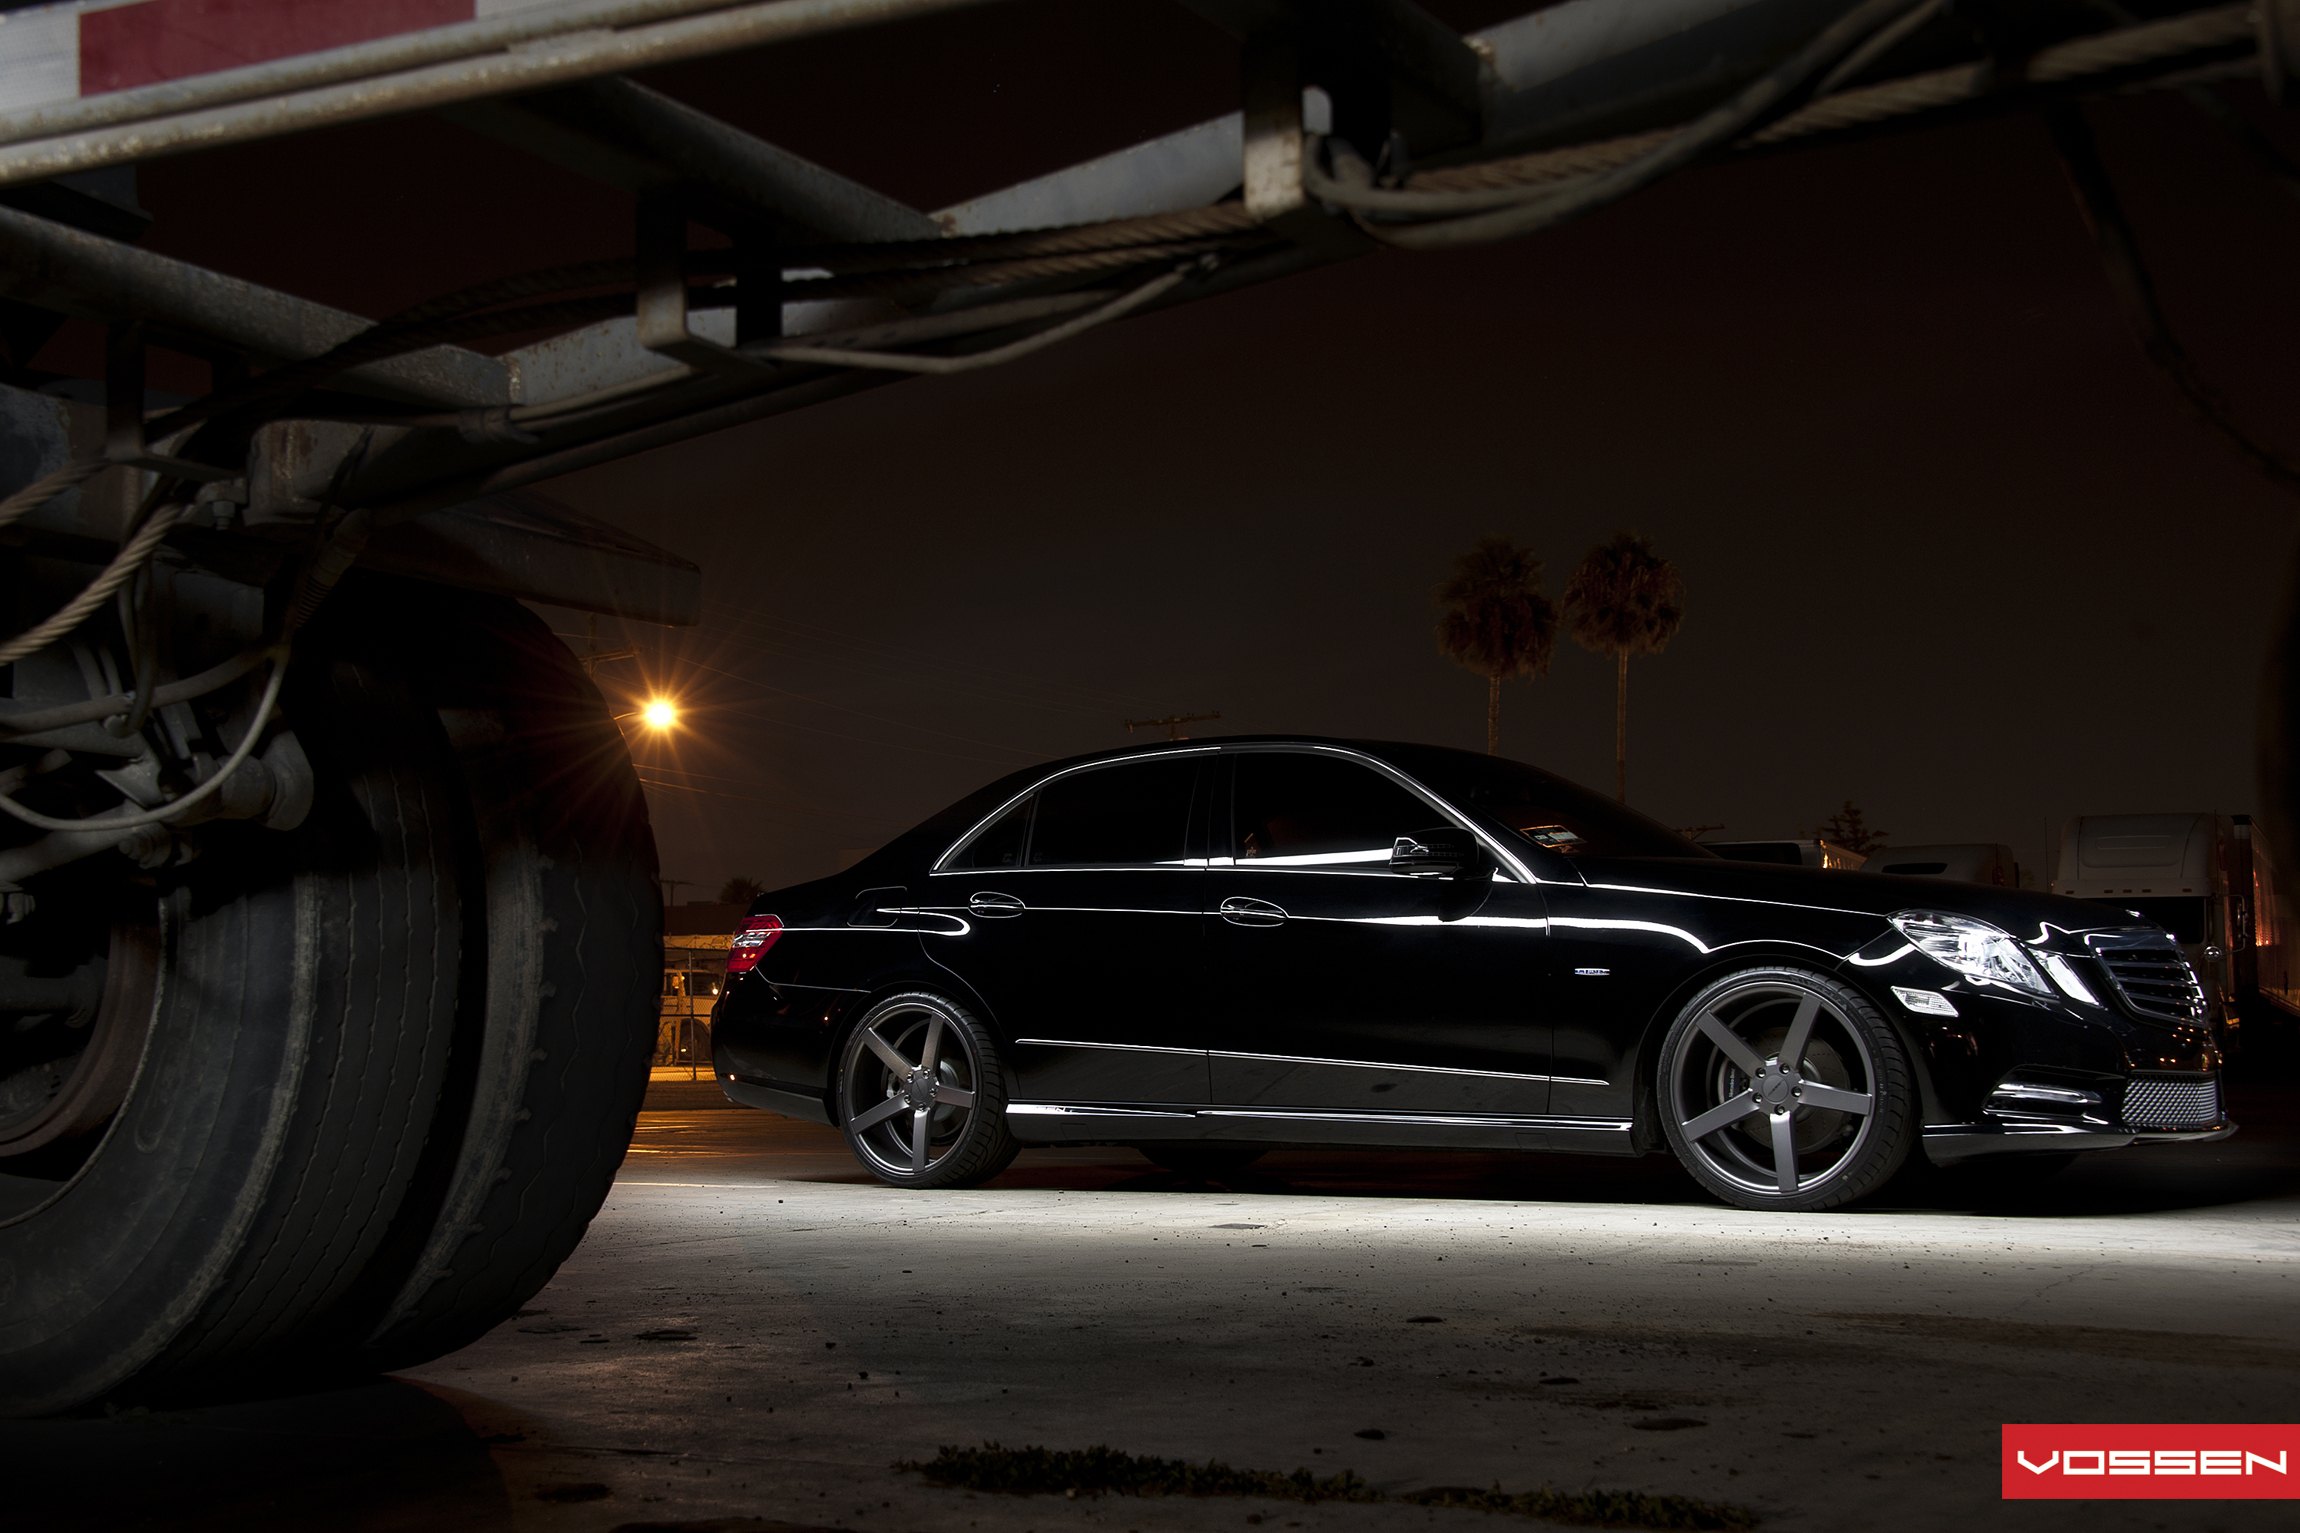 Black Mercedes E Class with Dark Smoke Vossen Rims - Photo by Vossen